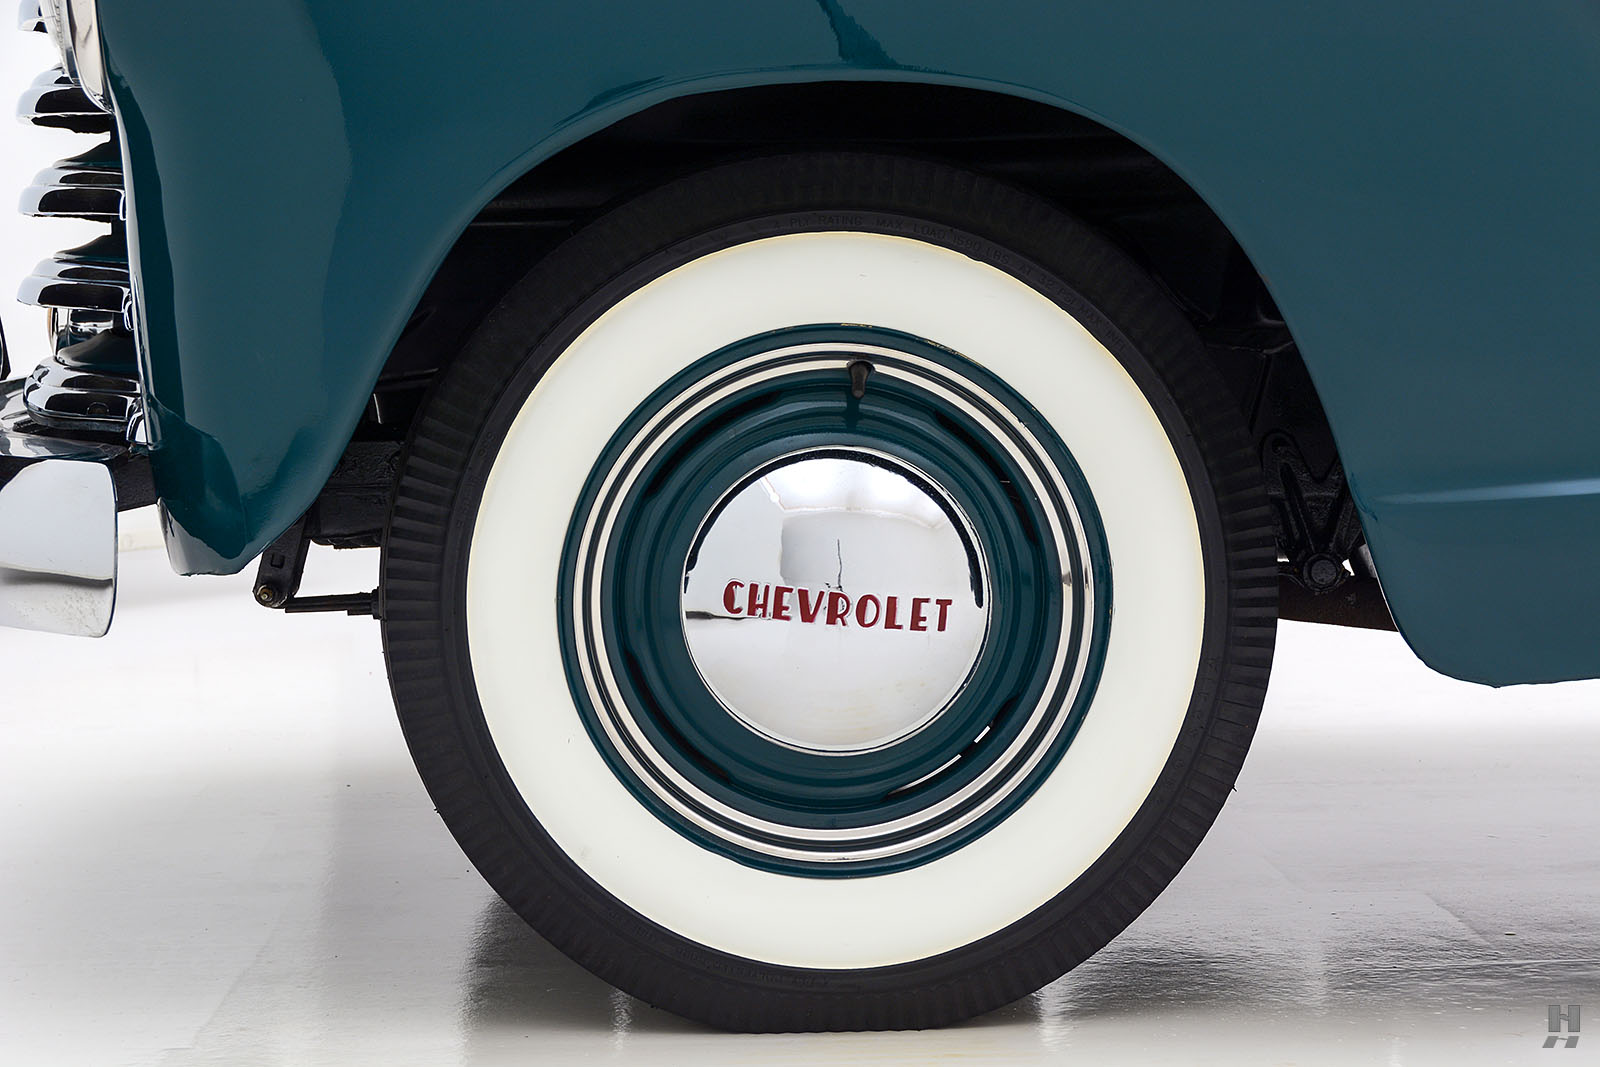 1951 chevrolet series 3100 1/2 ton